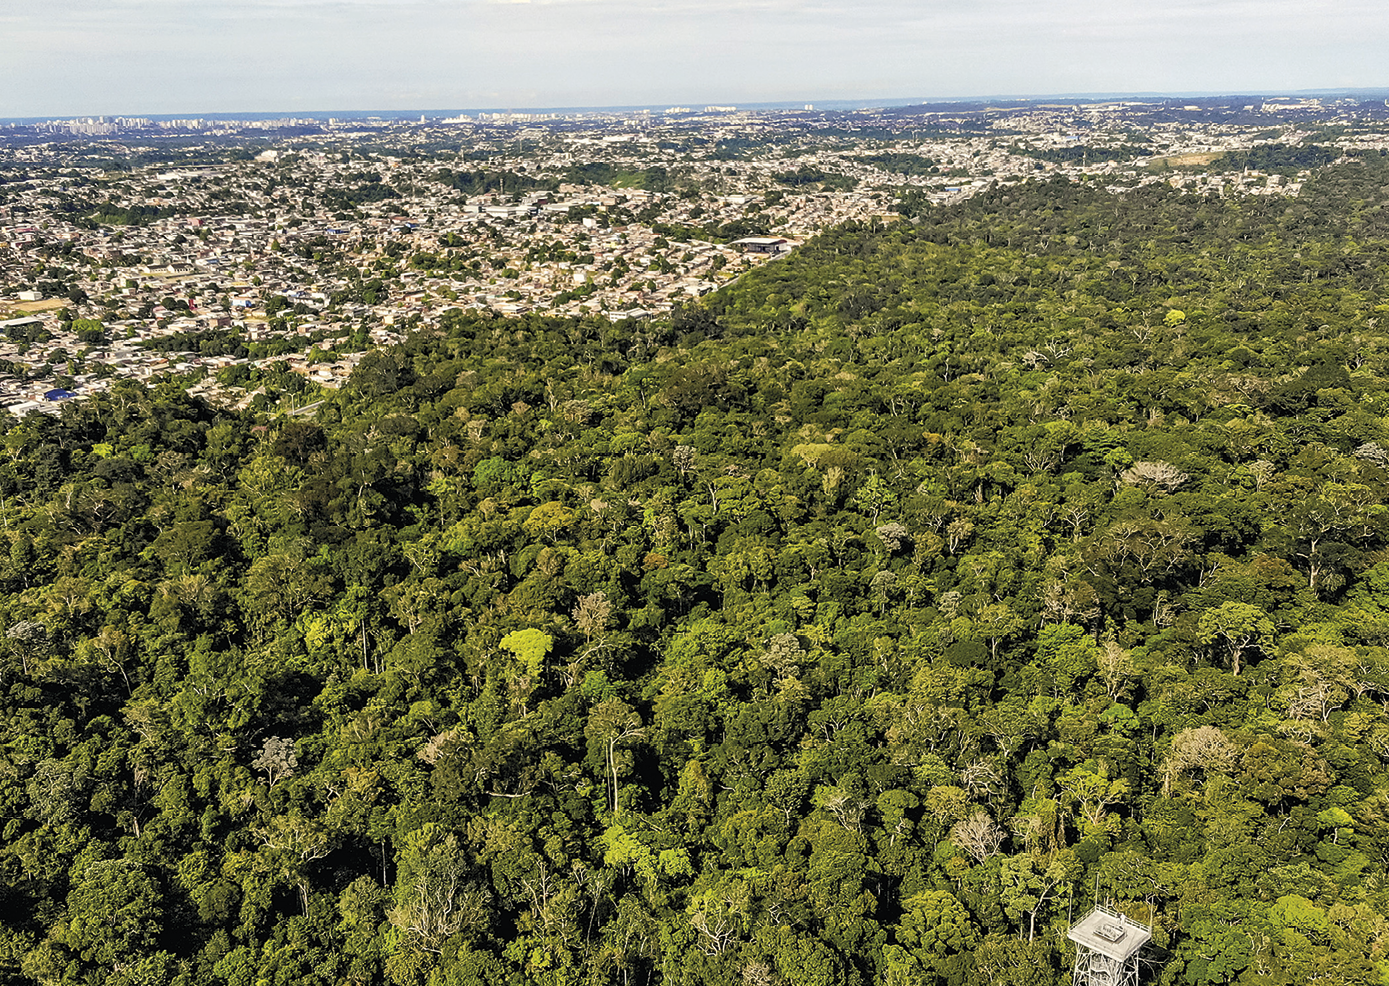 Fotografia. Em primeiro plano, vista de floresta composta por árvores altas e vegetação densa. À esquerda e ao fundo, muitas construções e céu parcialmente encoberto.